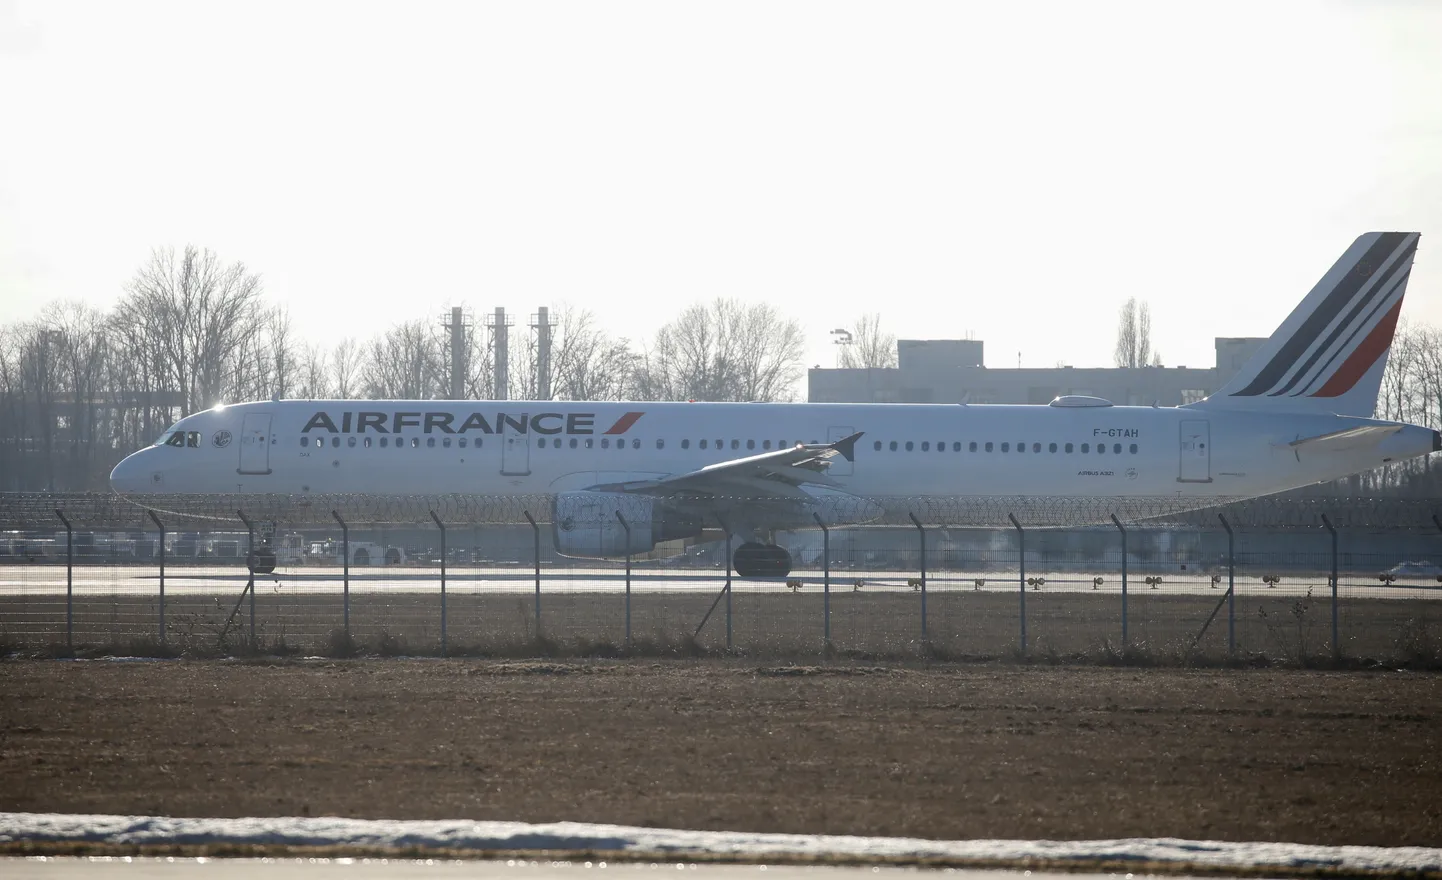 Air France'i lennuk Borõspili rahvusvahelisel lennuväljal Kiievis.